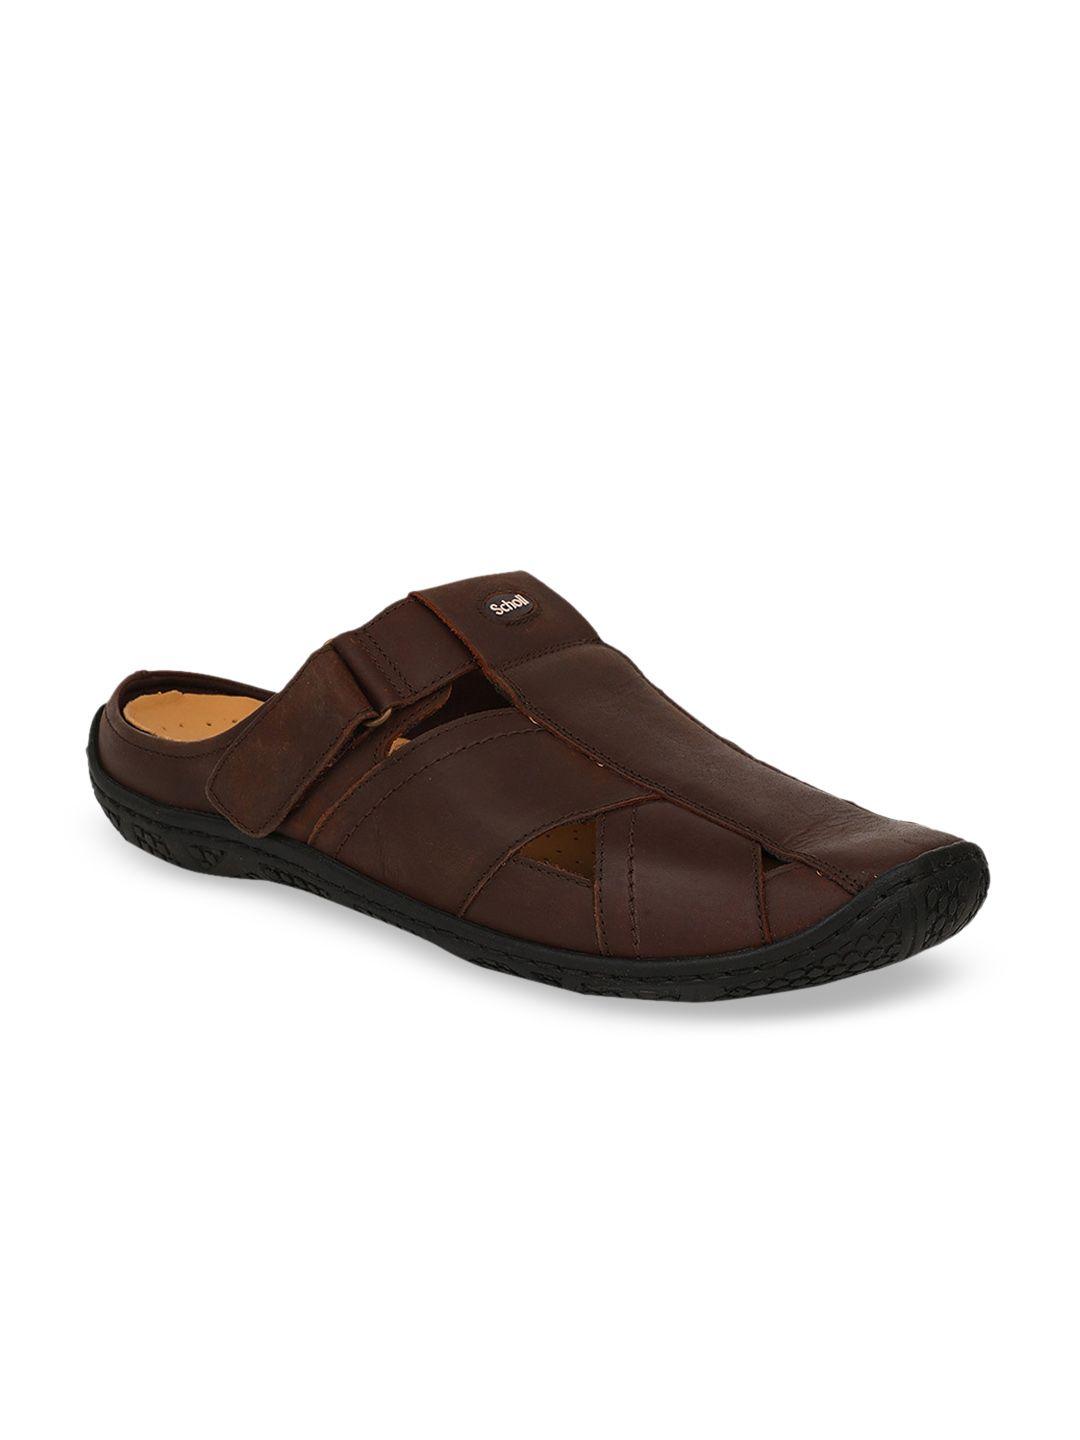 scholl men brown leather comfort sandals